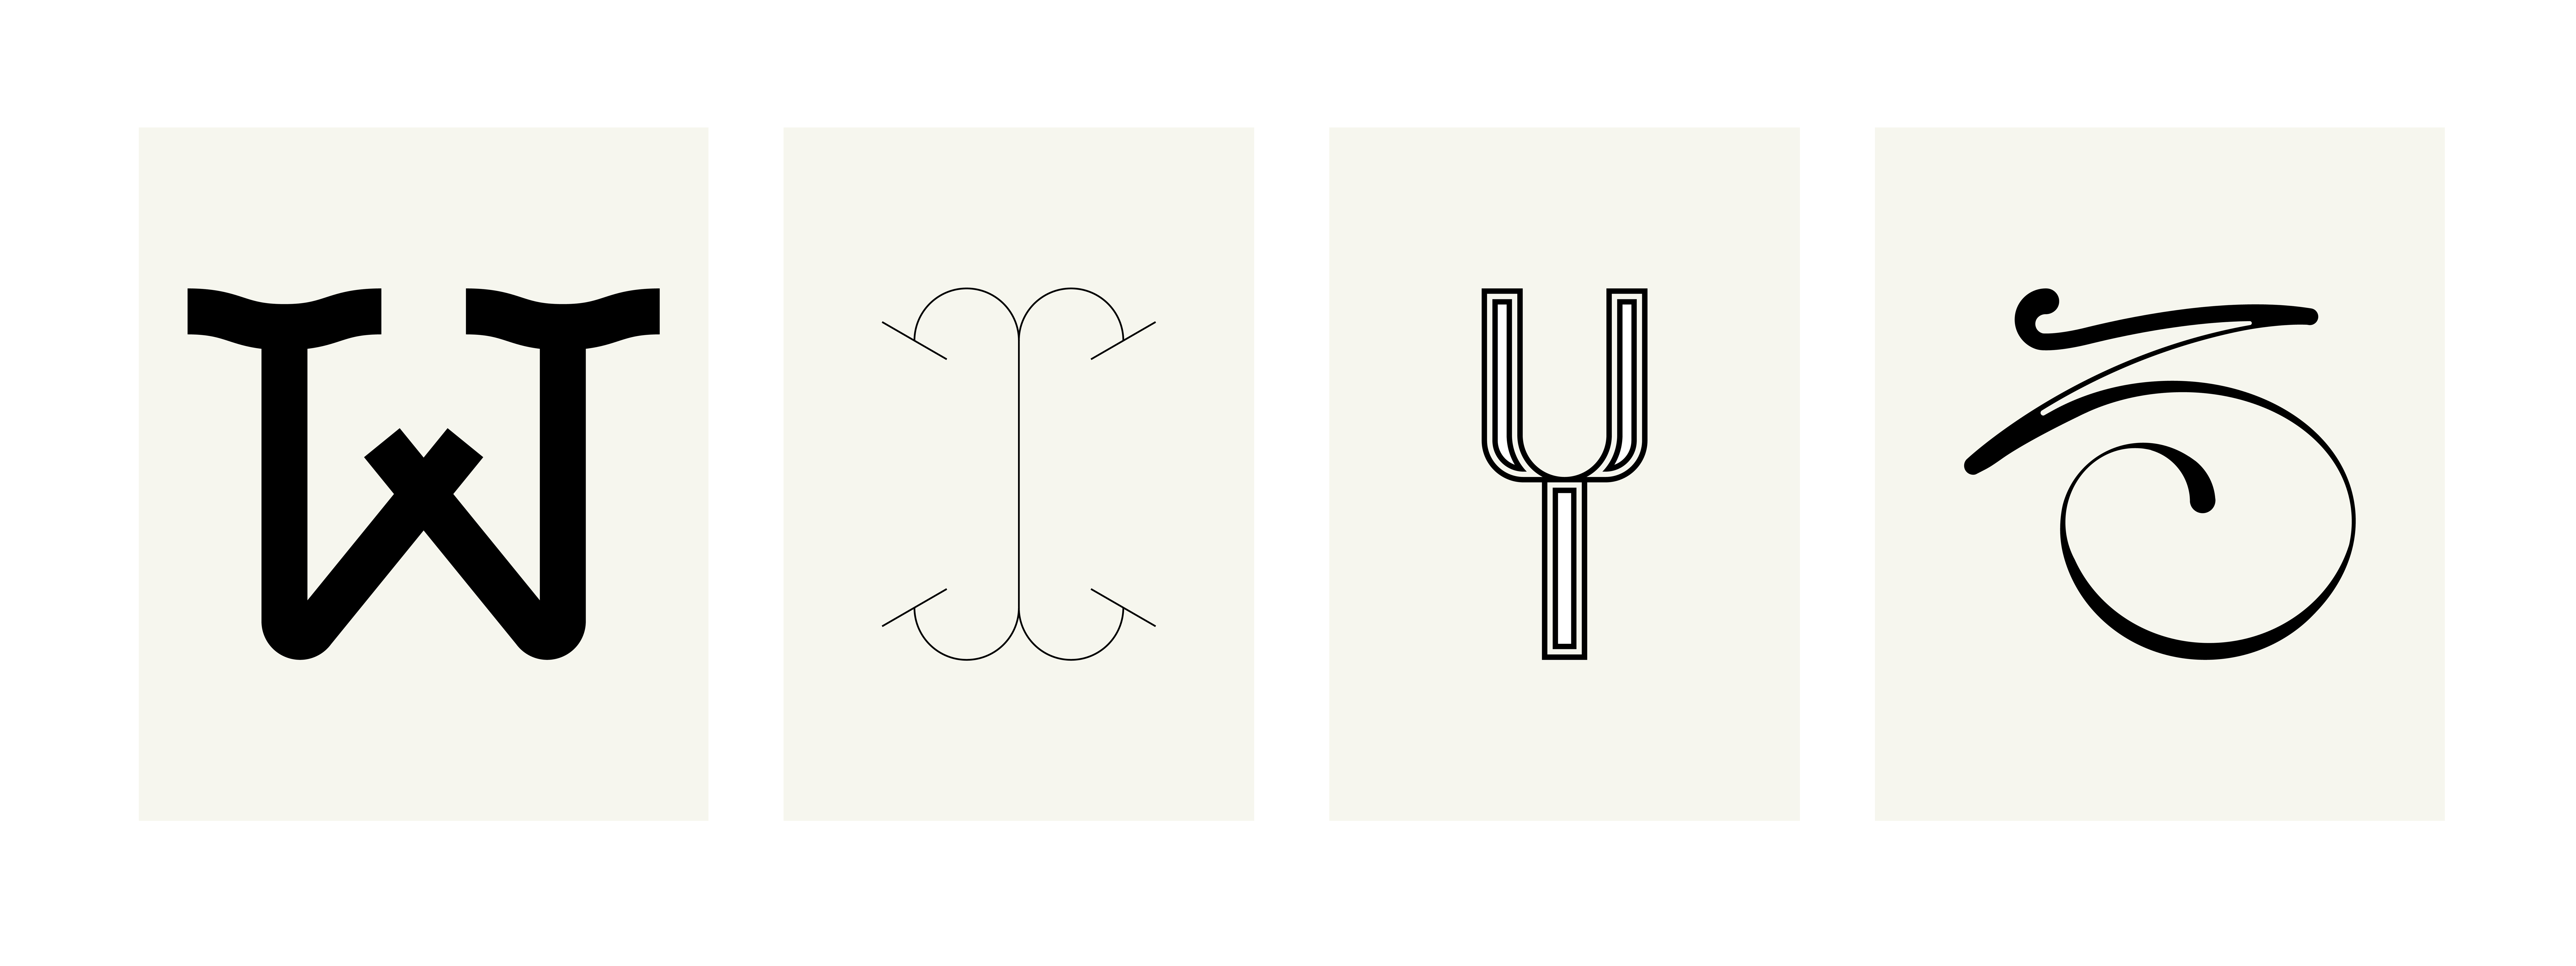 julie-pirovani-typographie-abecedaire-libre-planche-WXYZ